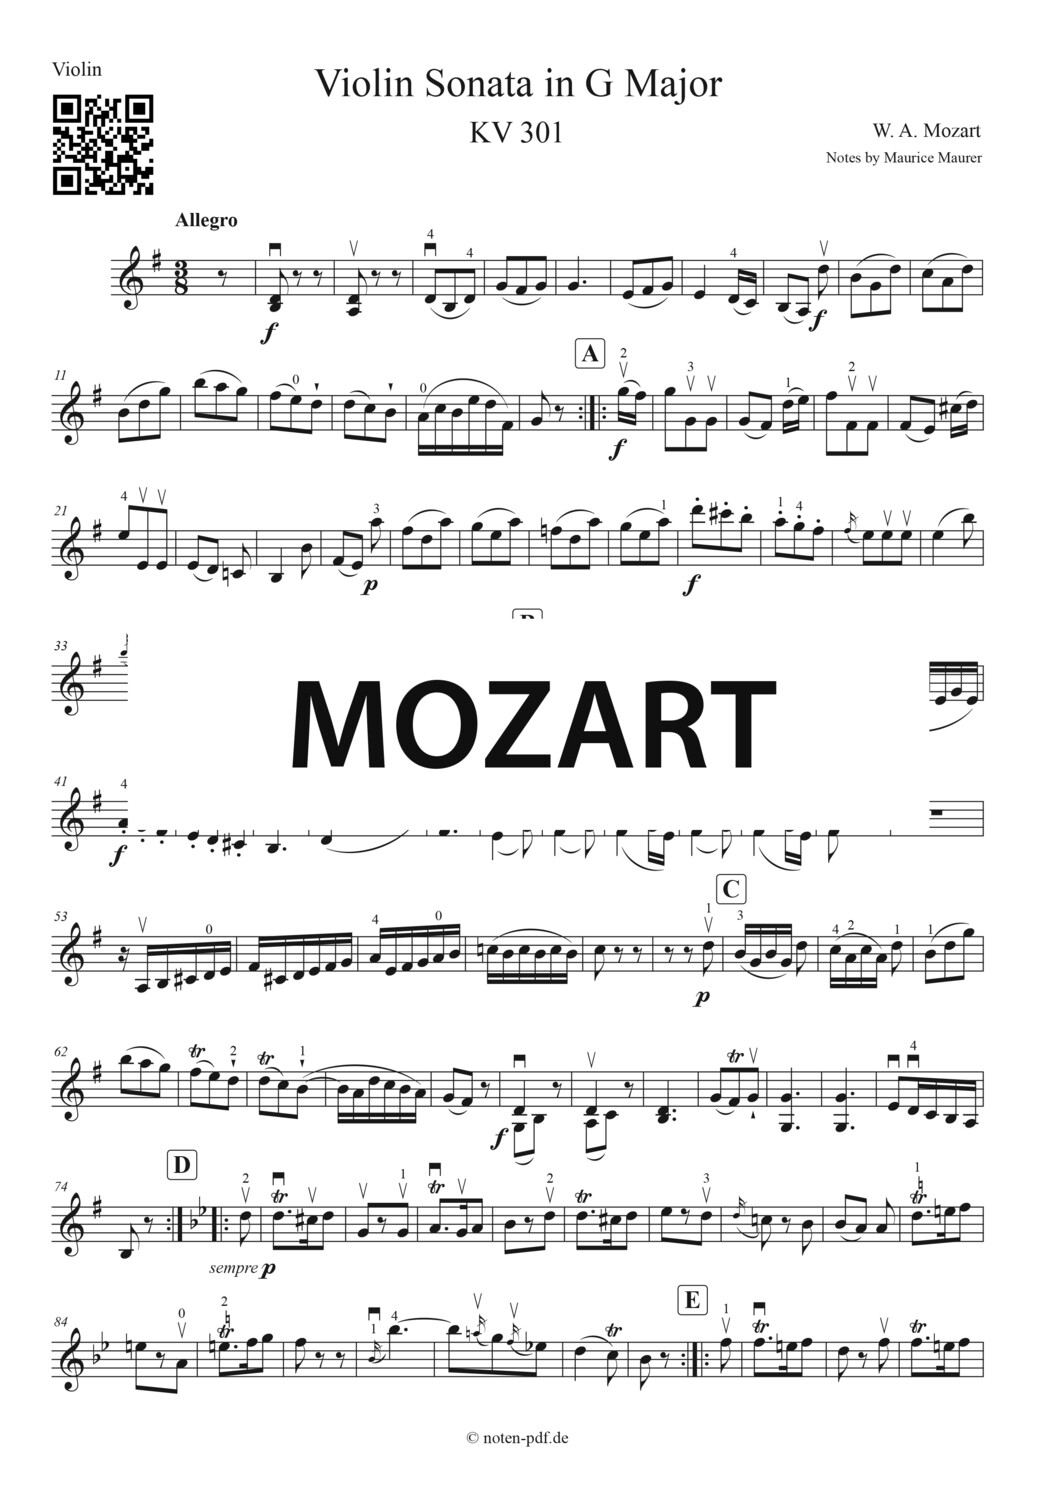 Mozart: Violin Sonate KV 301 in G Major 2. Movement